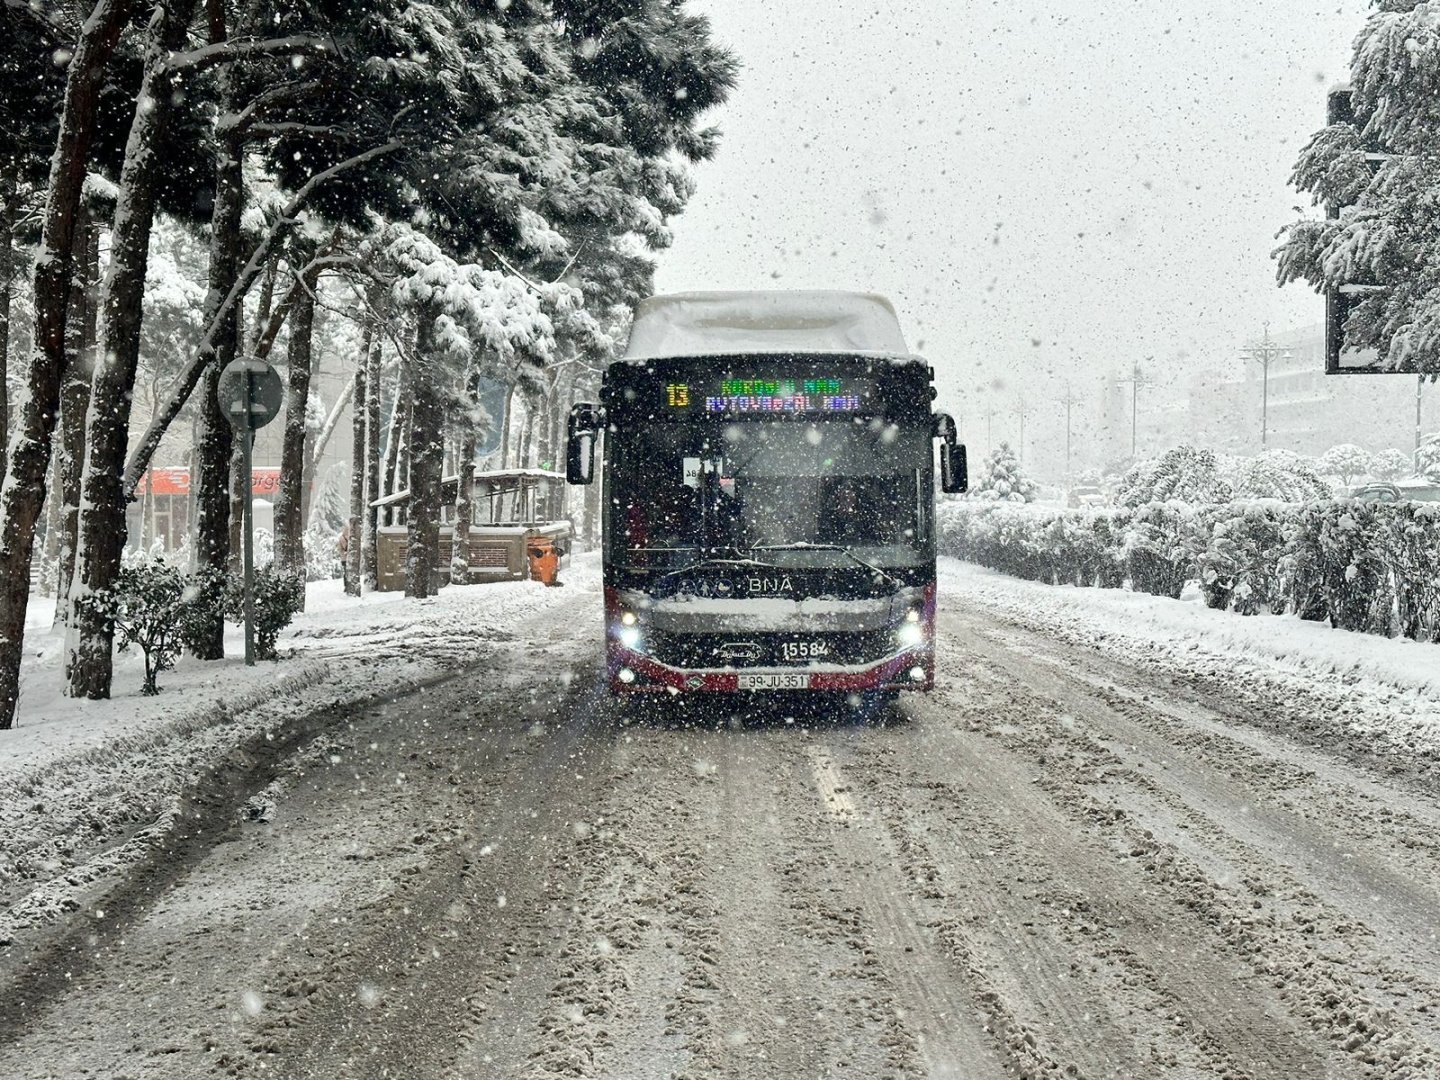 Yollar qardan təmizləndikcə avtobusların xəttə buraxılması təmin edilir - AYNA (FOTO)